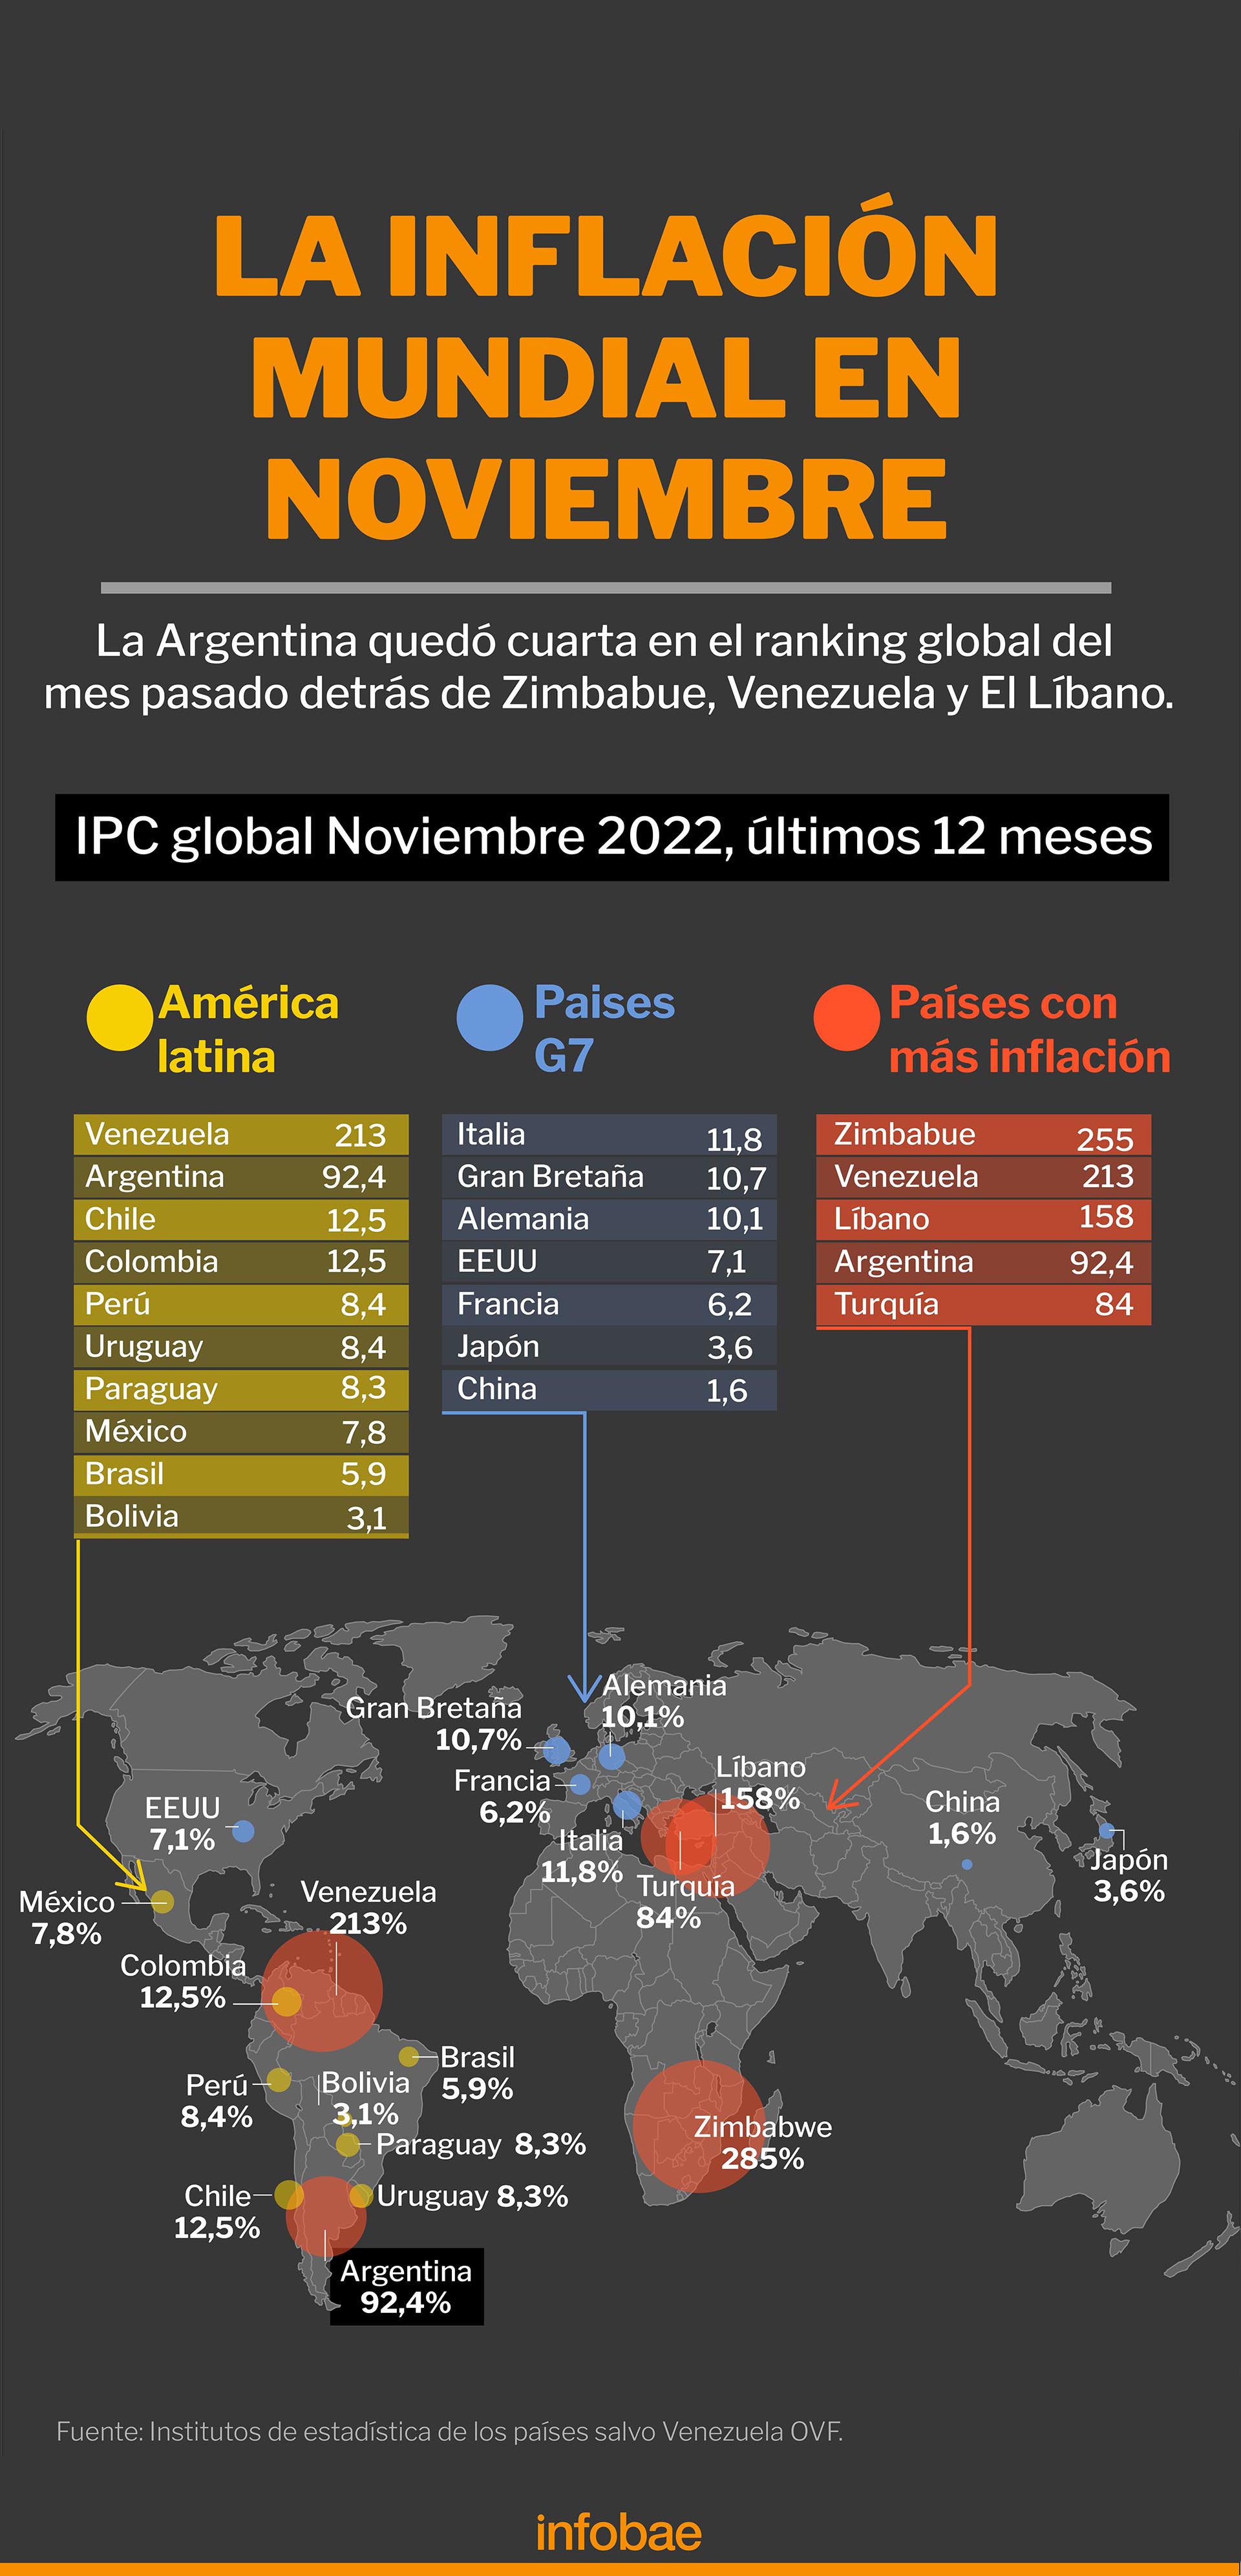 La inflación mundial en noviembre
Infografía de Marcelo Regalado